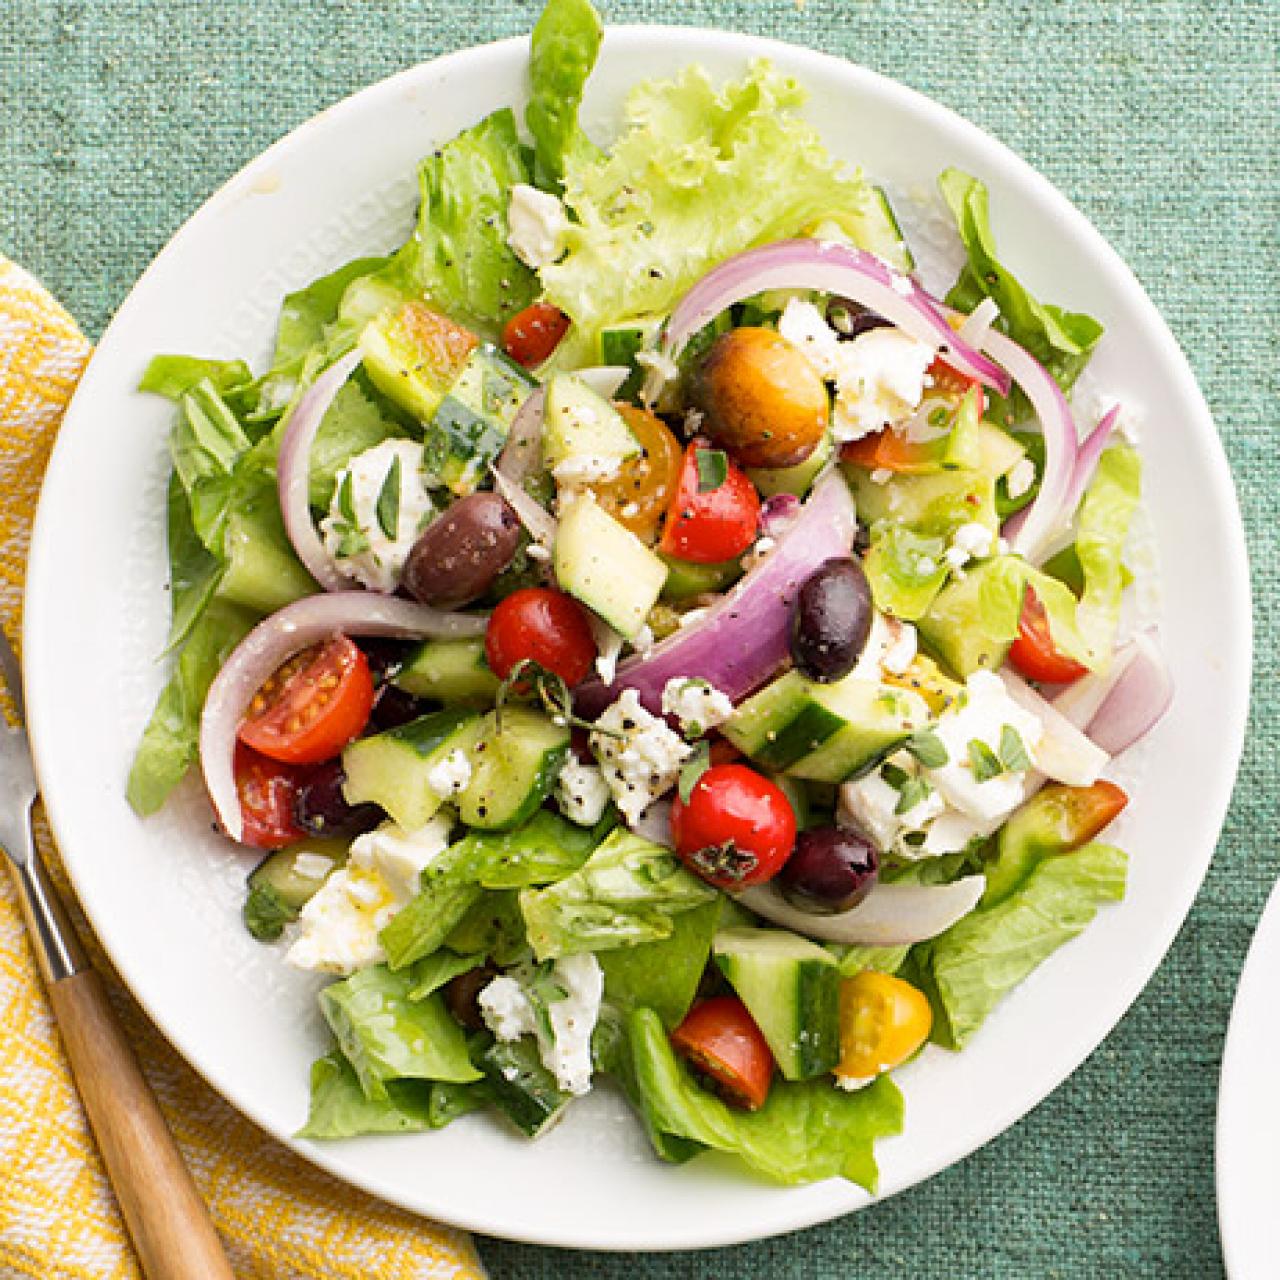 Greek Salad, 10 oz at Whole Foods Market